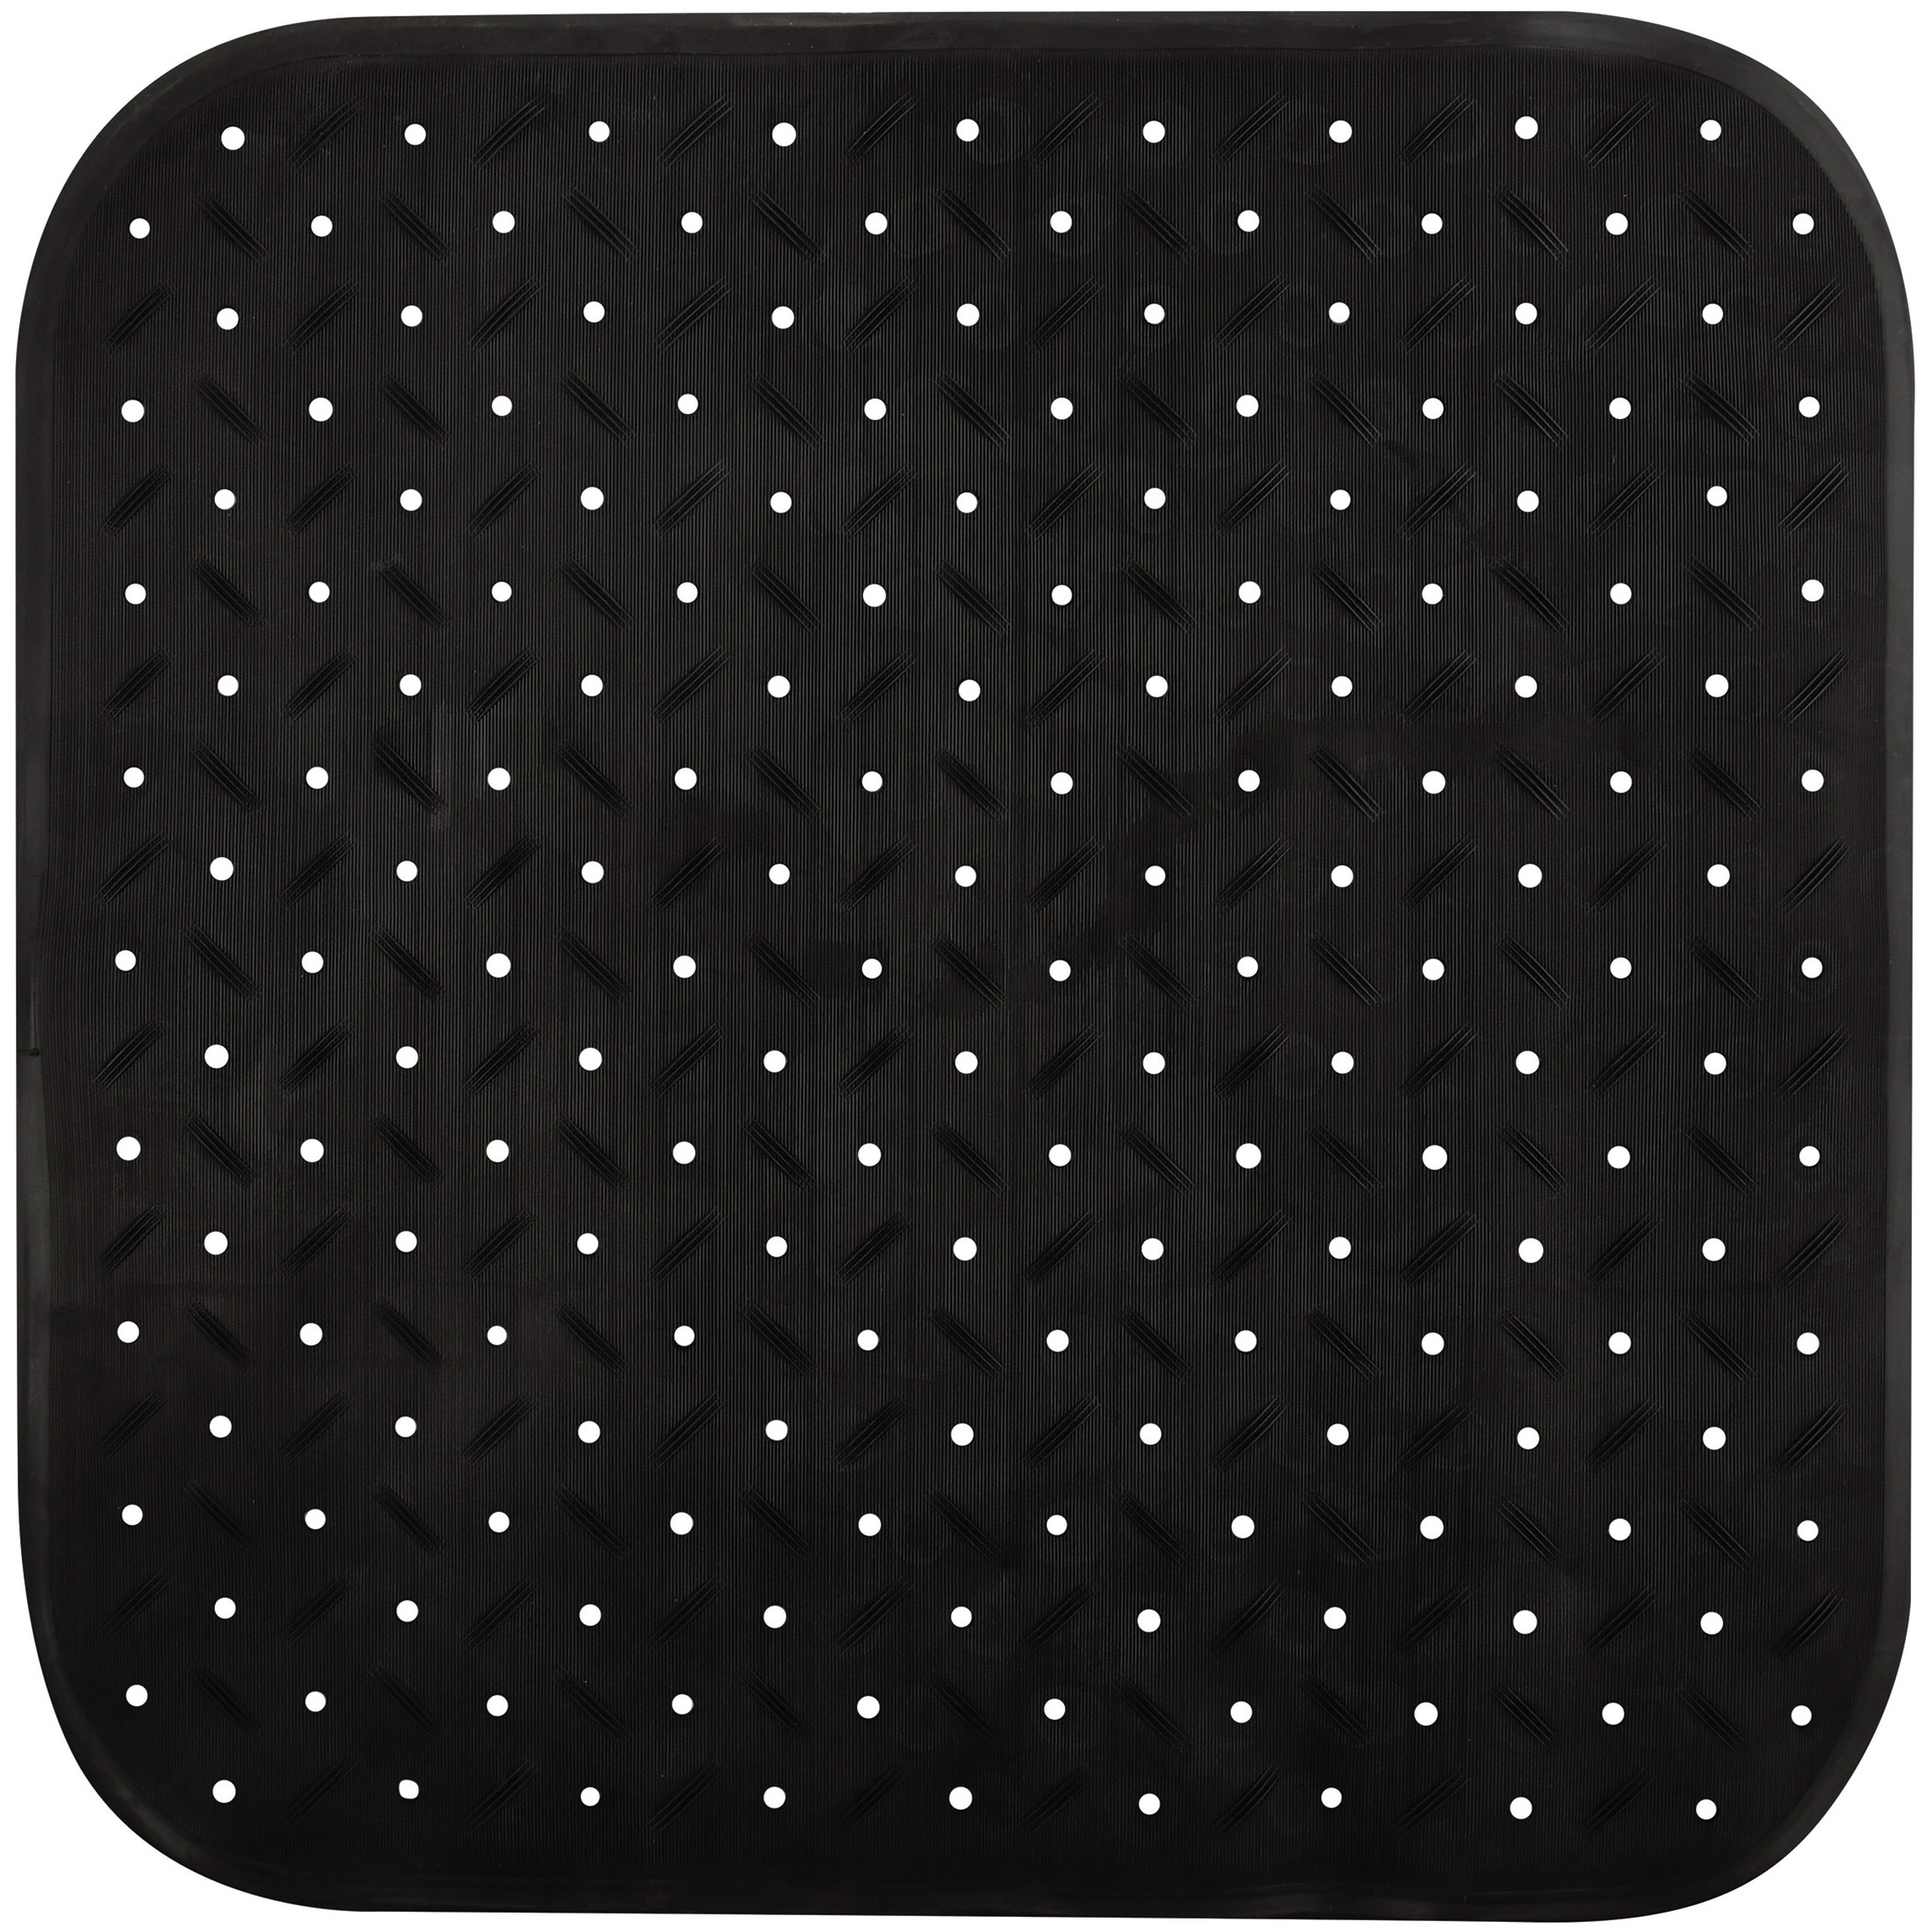 Douche-bad anti-slip mat badkamer rubber zwart 54 x 54 cm vierkant